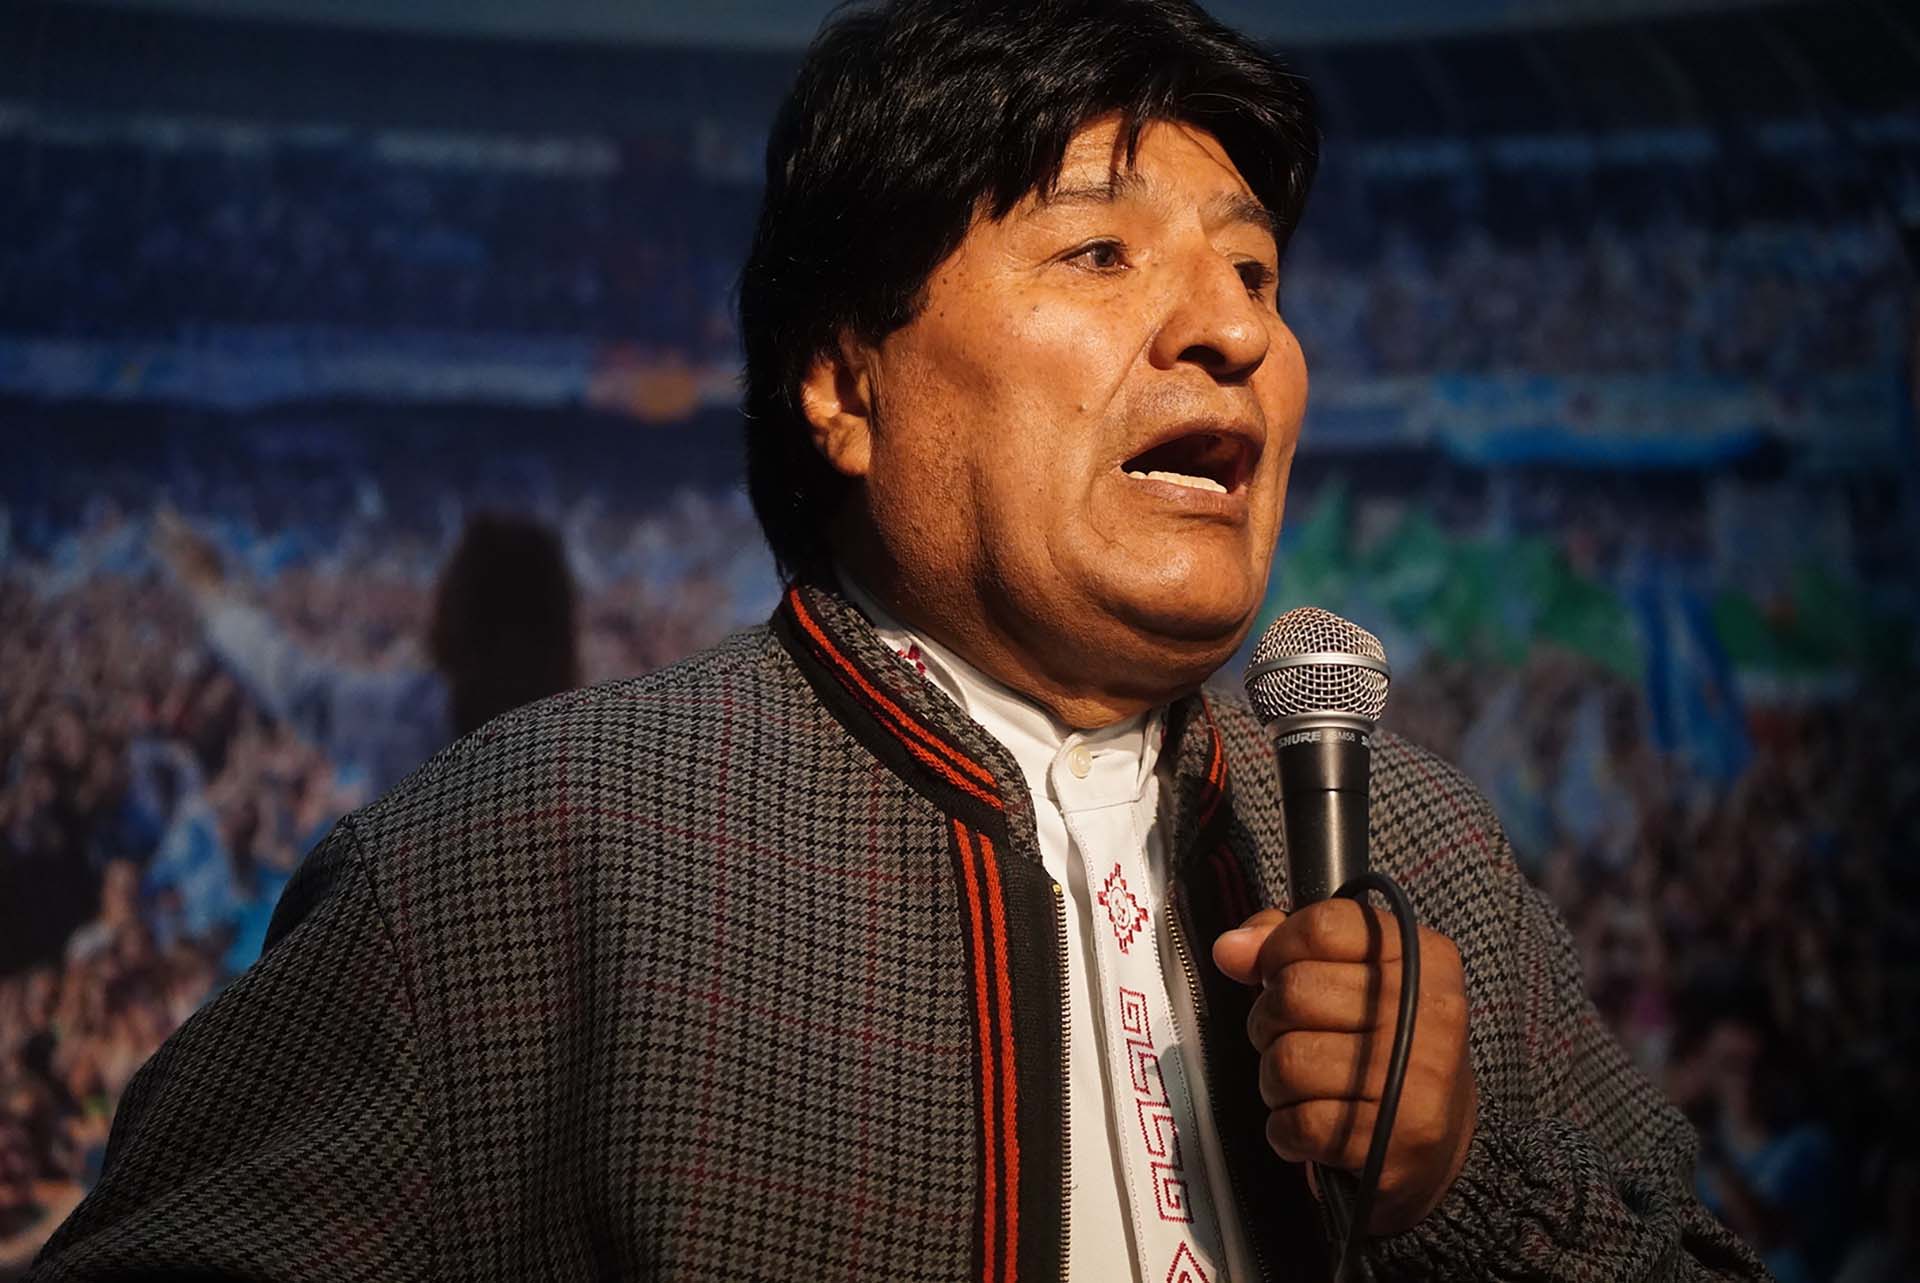 El expresidente boliviano Evo Morales fue declarado como "persona non grata" por el Congreso.